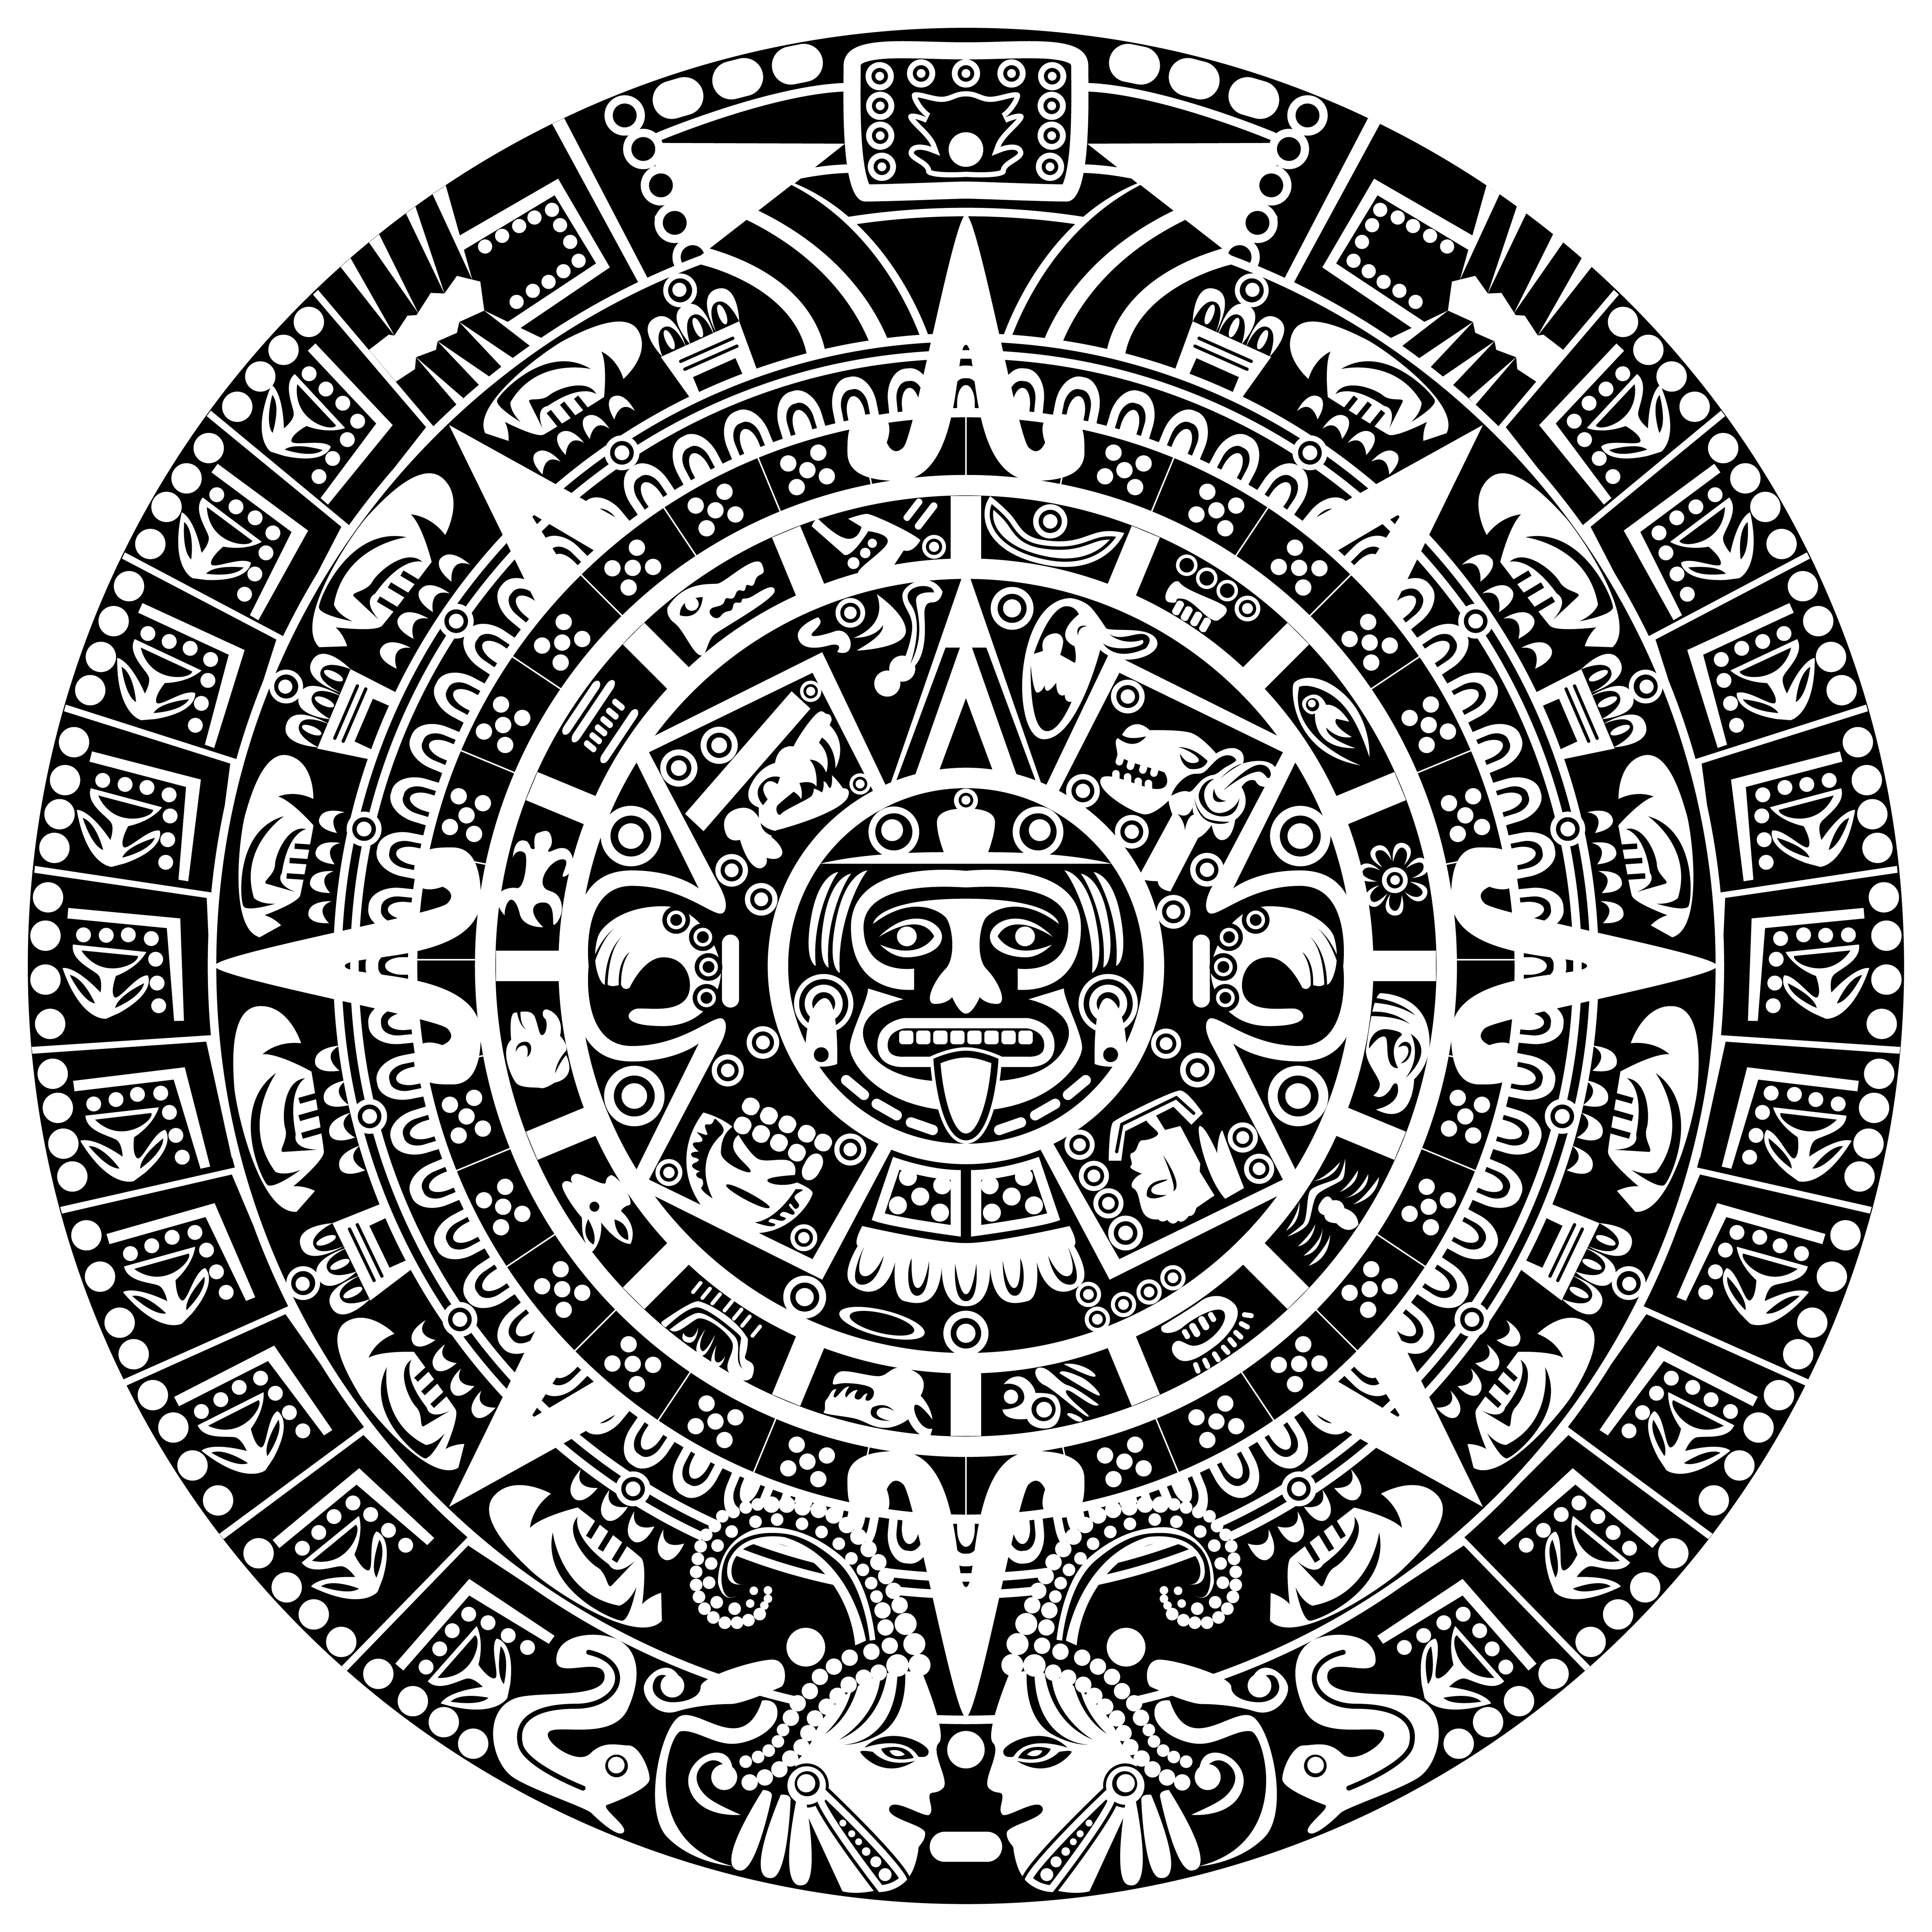 Ацтекский календарь Майя